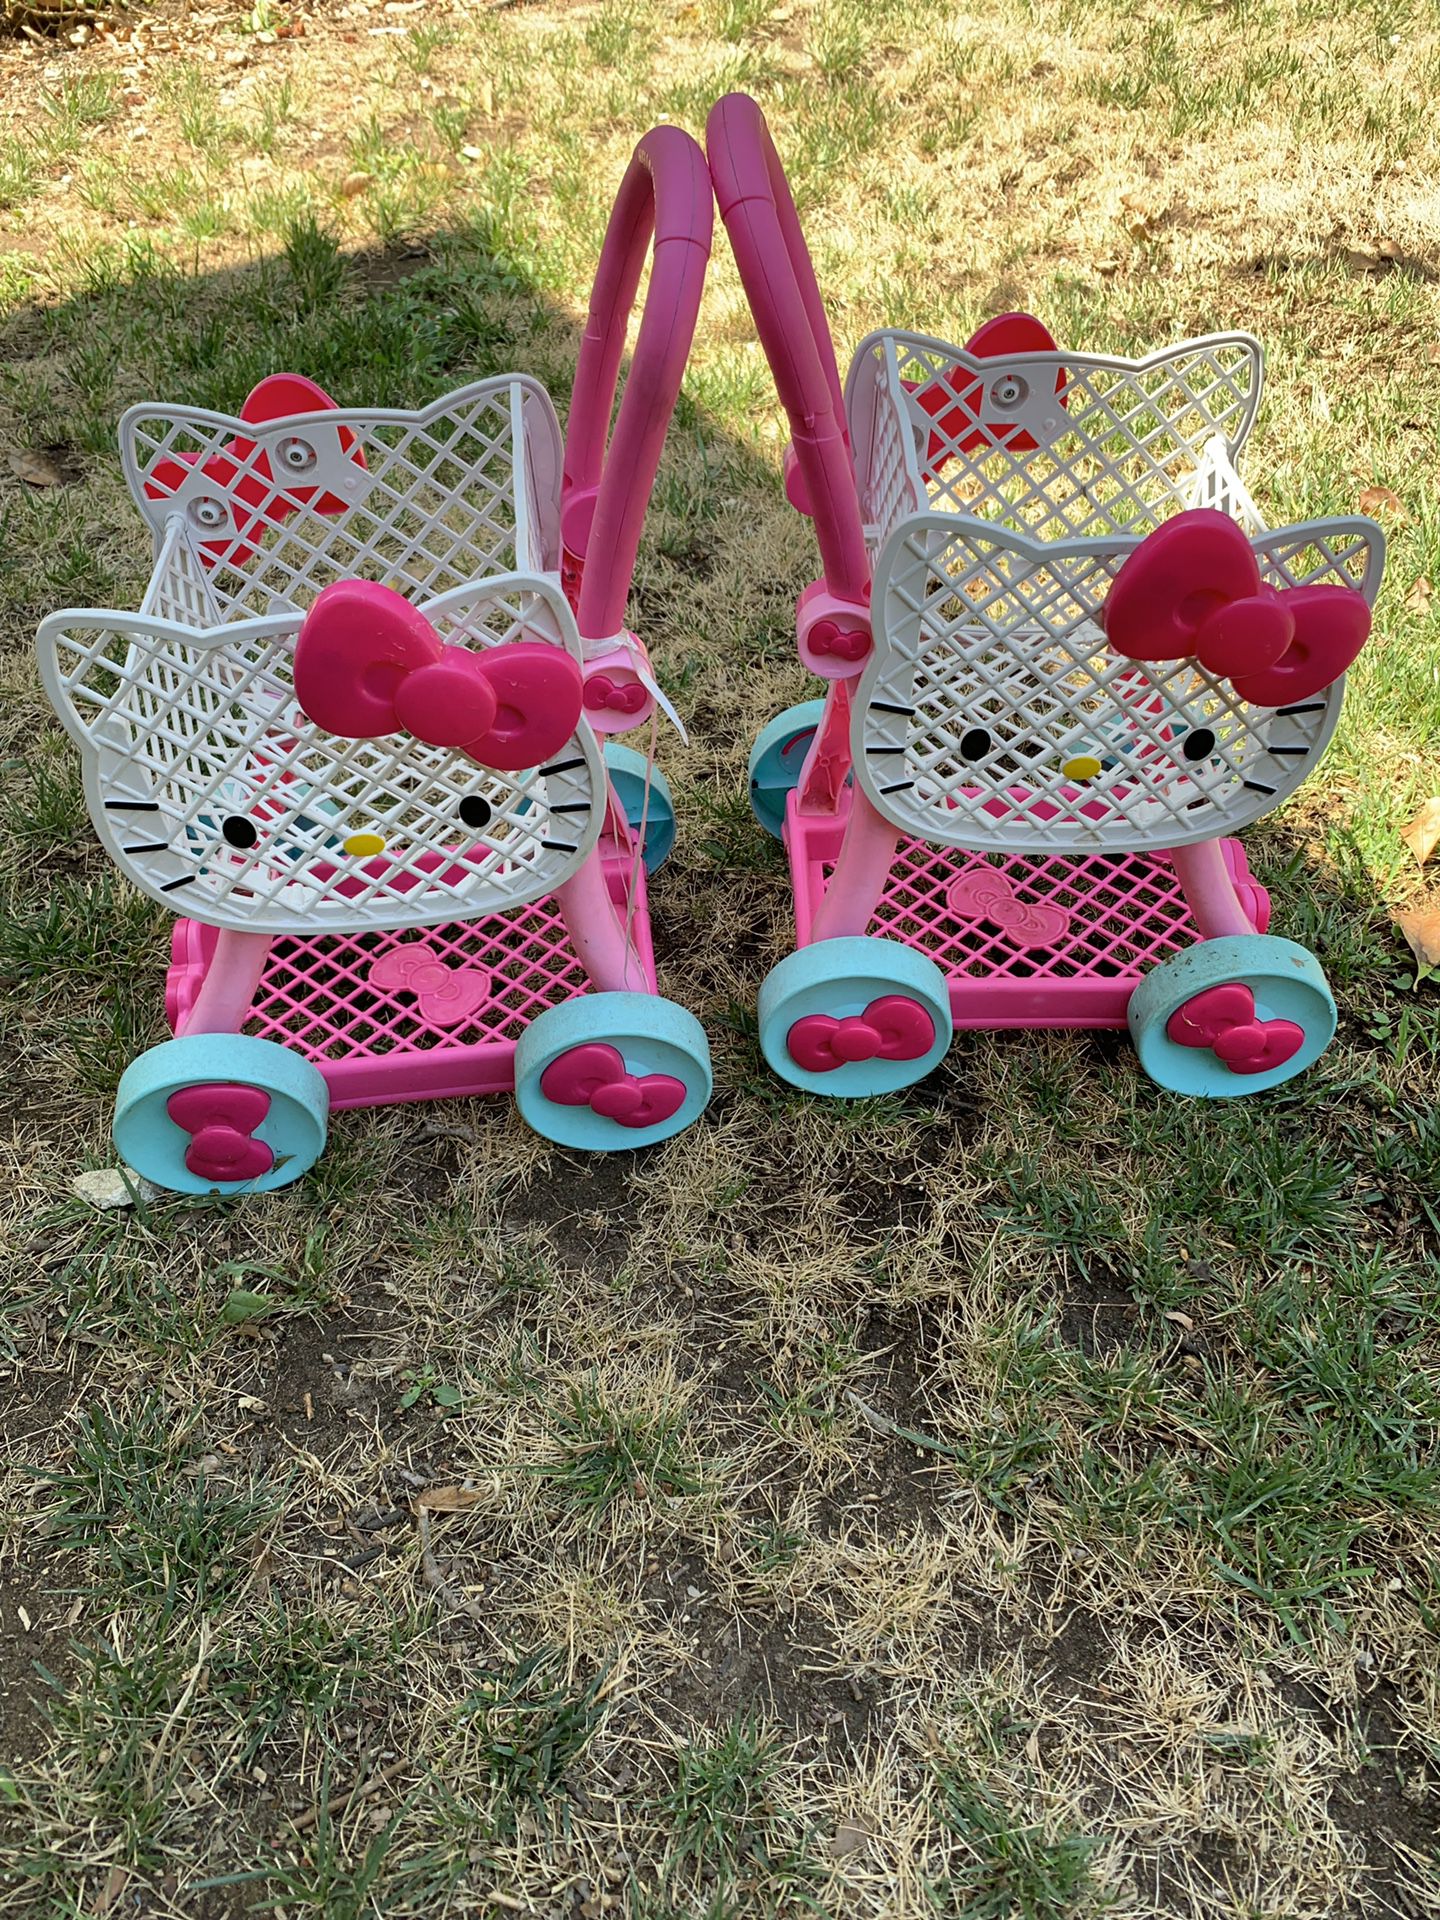 Toddler shopping cart